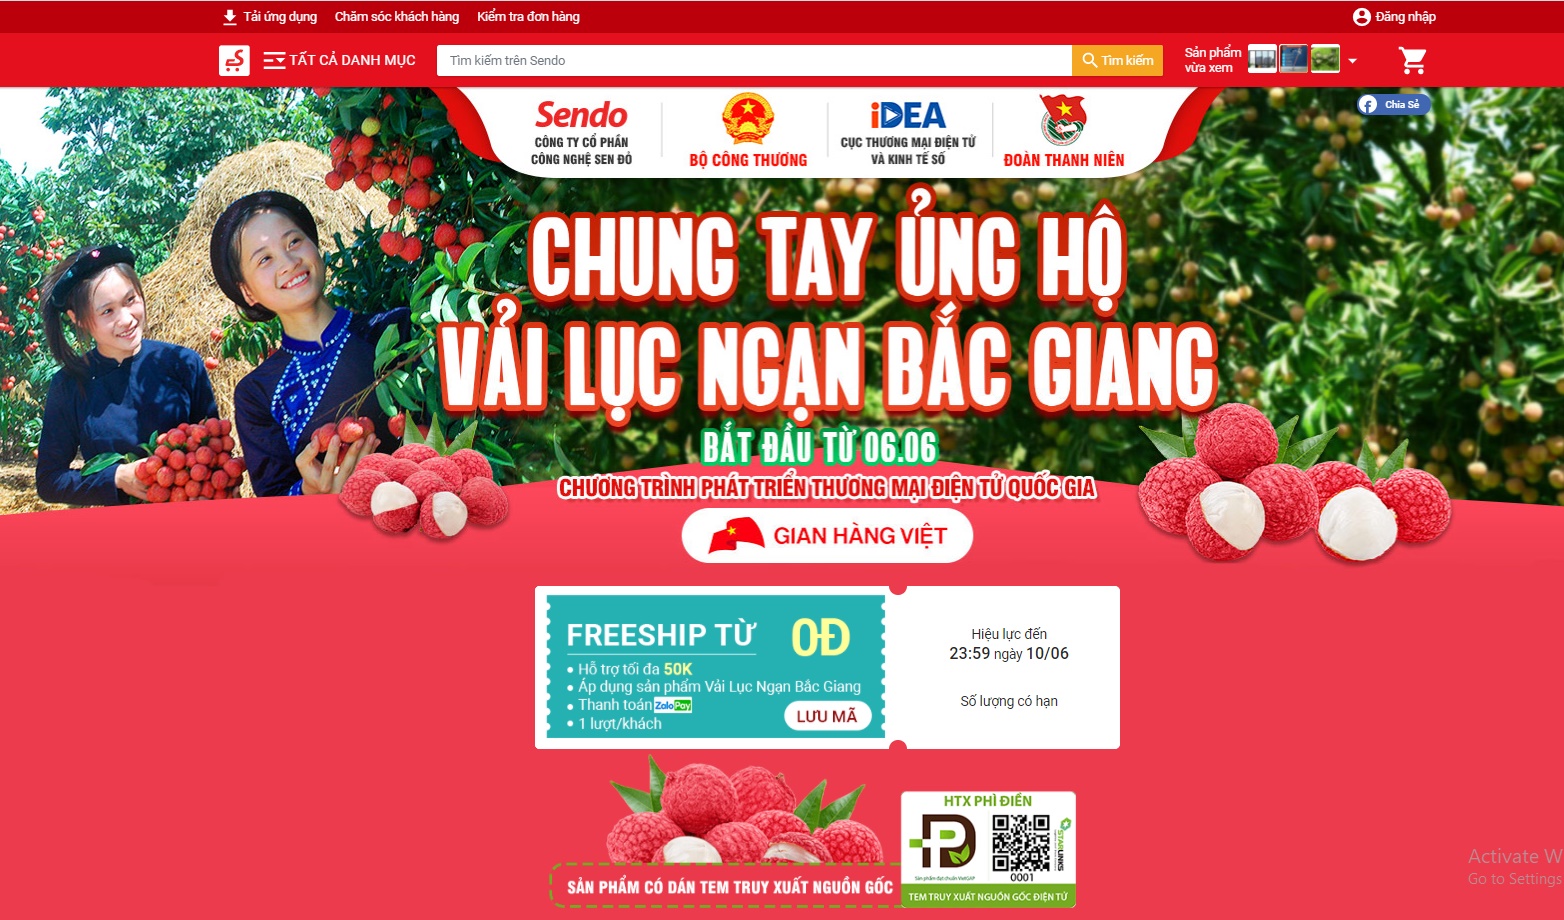 Mua vải thiều Bắc Giang: Tới 7 gợi ý website, sàn thương mại điện tử đặt online đảm bảo ngon chất lượng - Ảnh 10.